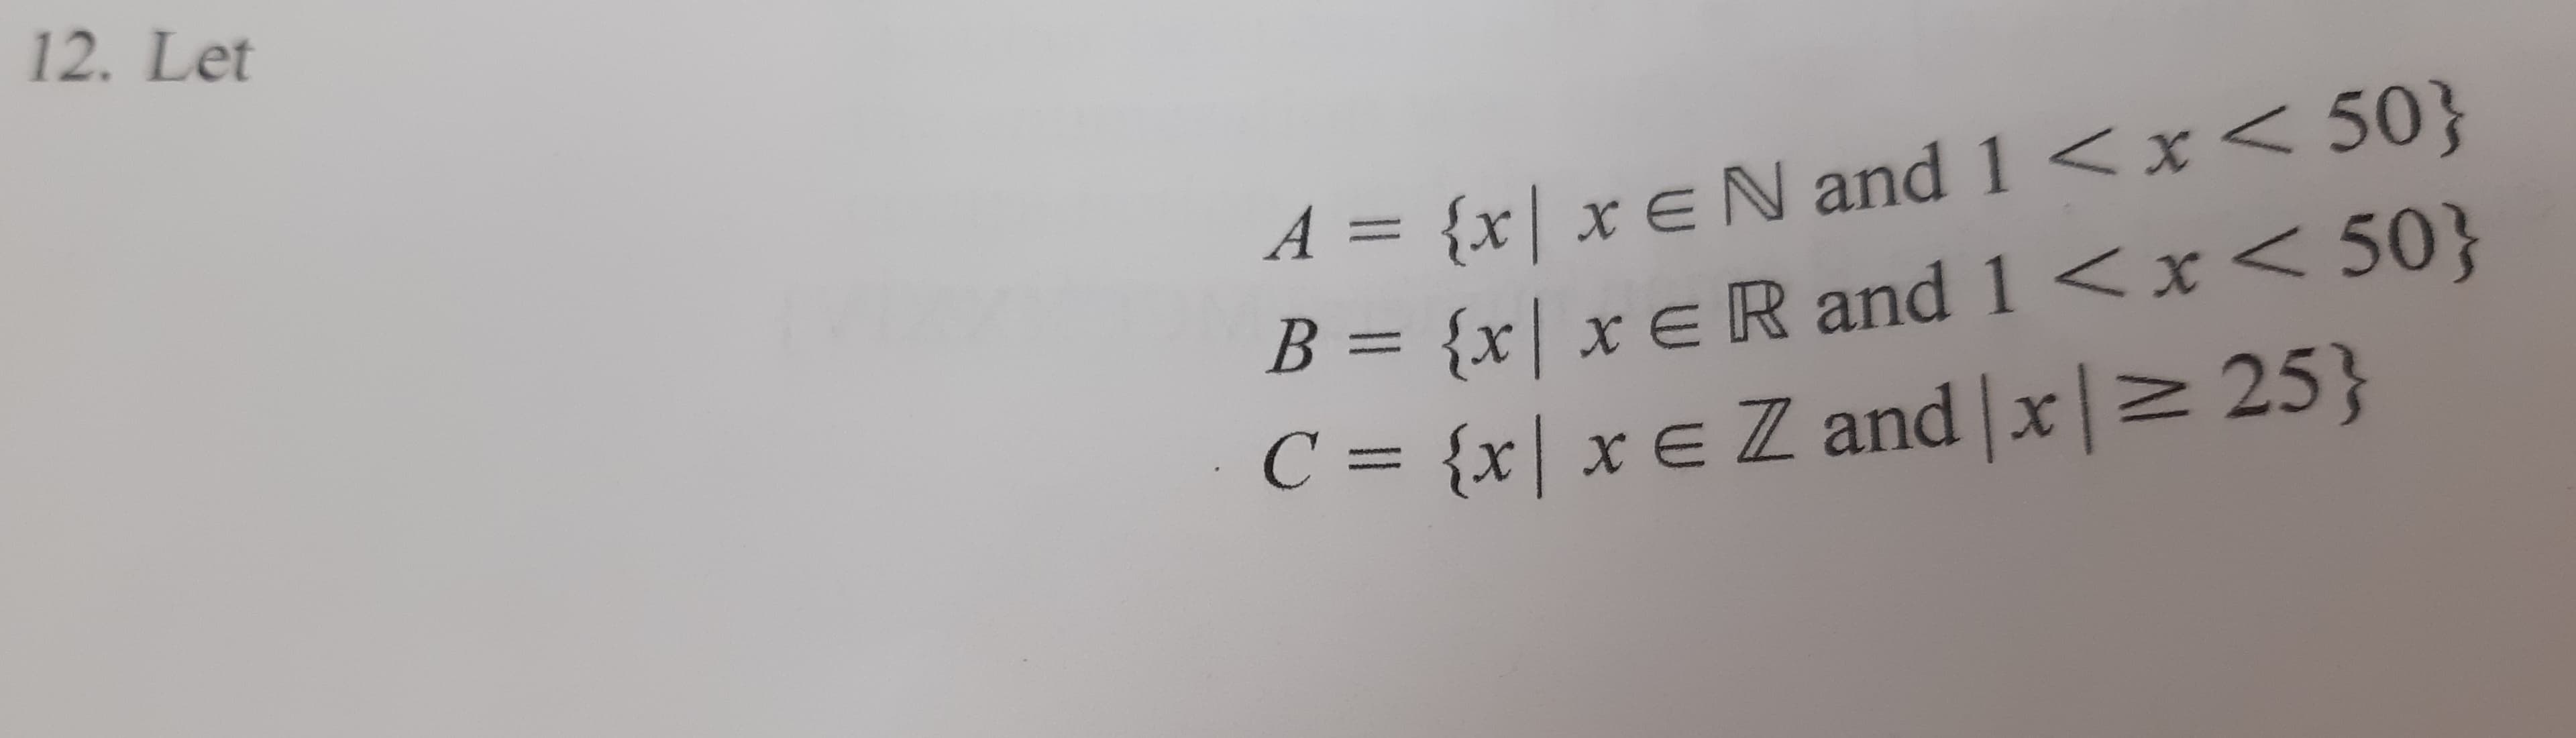 12. Let
{x| x EN and 1
B = {x| x € R and 1 <x< 50}
C = {x| x € Z and |x|> 25}
<x < 50}
A =
%3D
